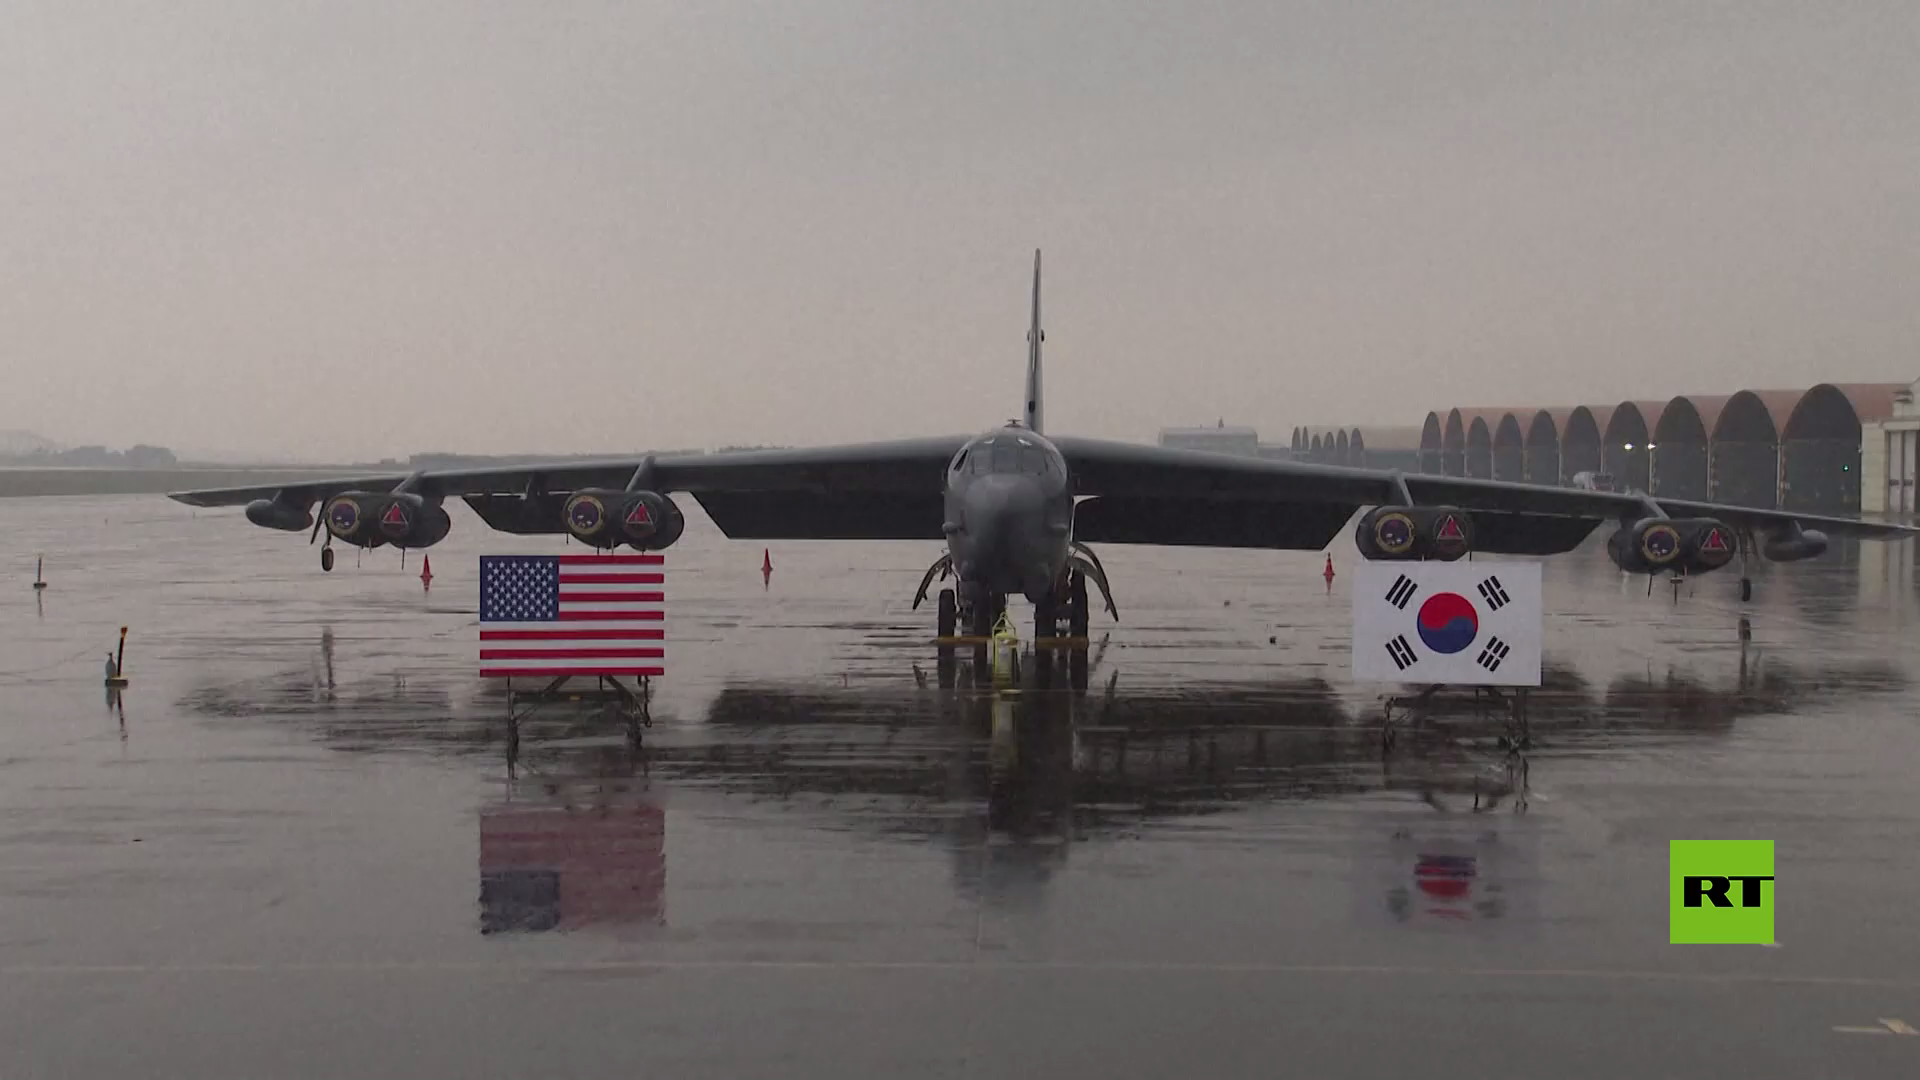 لأول مرة.. قاذفة ب-52 الأمريكية الاستراتيجية تهبط في قاعدة عسكرية لكوريا الجنوبية (فيديو)